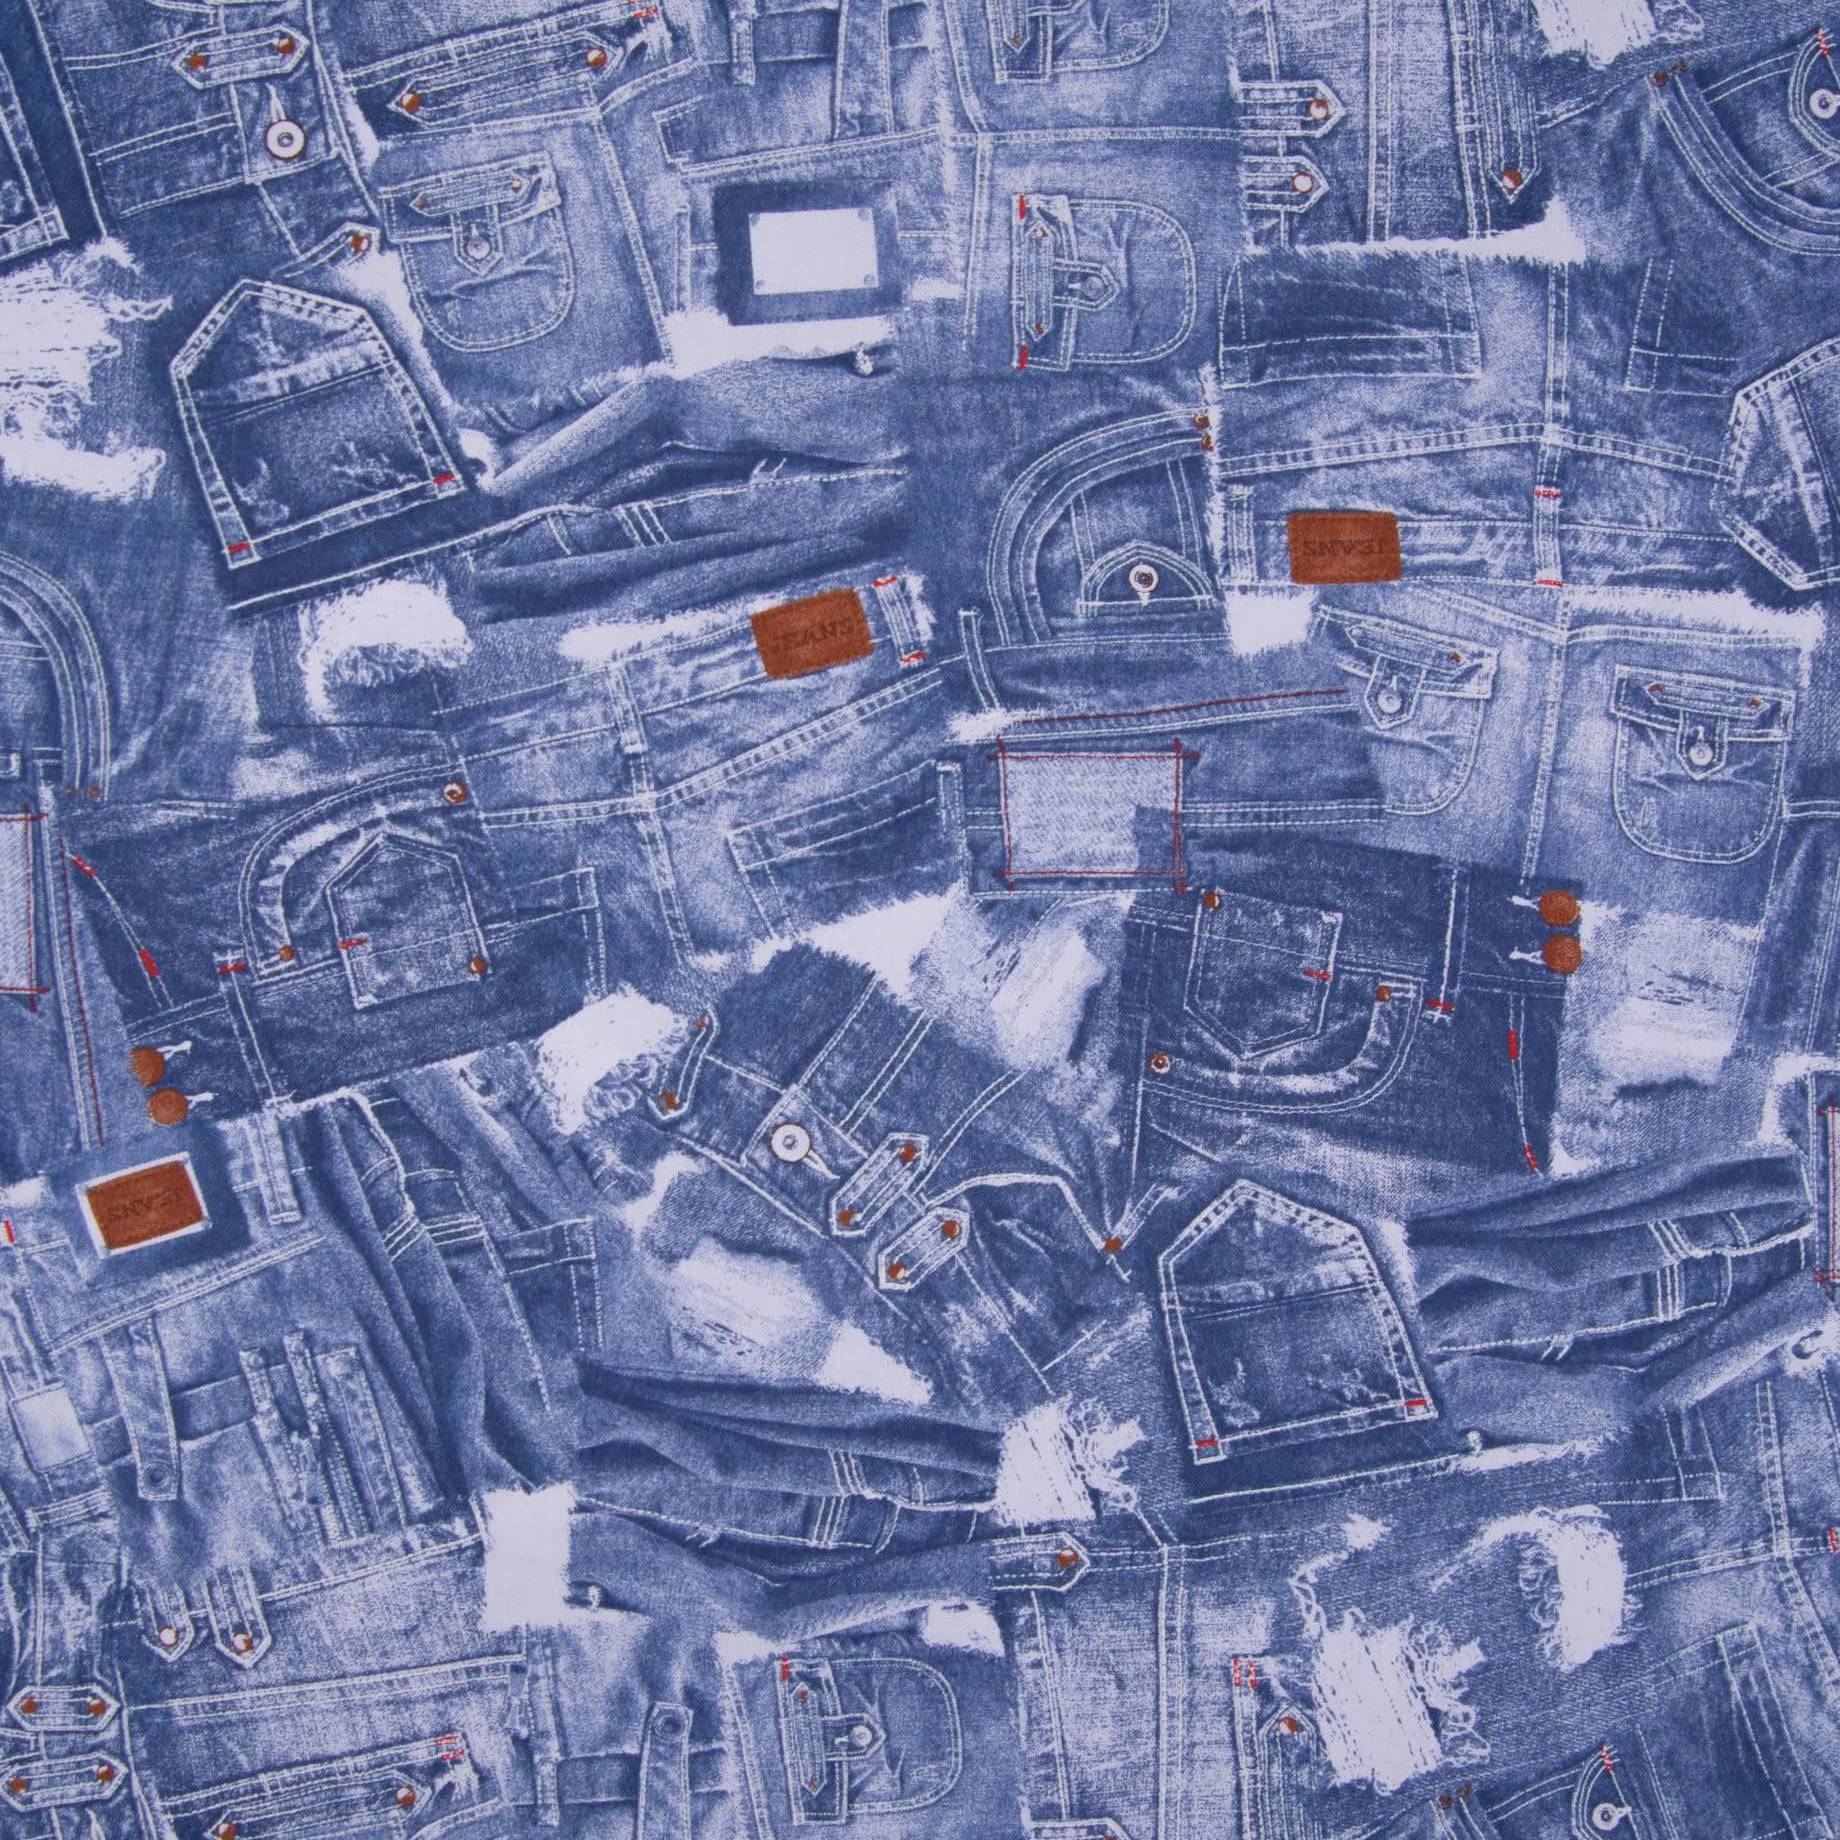 Декоративная ткань, Аризона Джинс, хлопок 100%, 204г/м, синий, 50x70 см